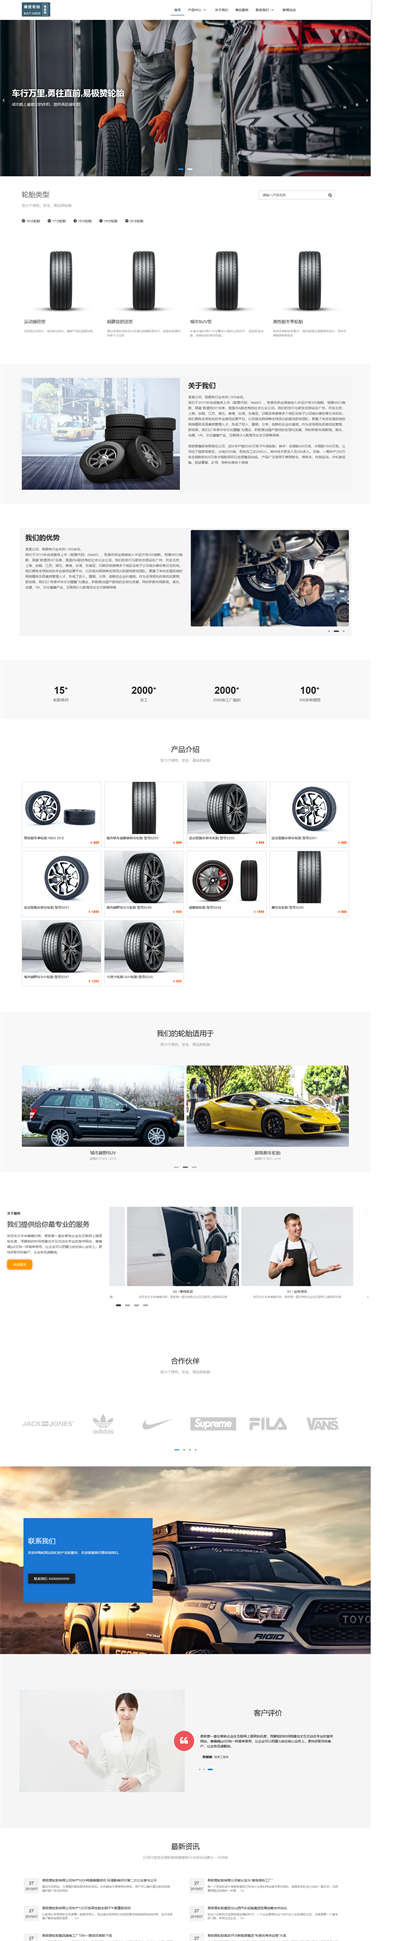 汽车轮胎-机动车轮胎-修车厂配件-橡胶轮胎网站模板网站模板预览图片